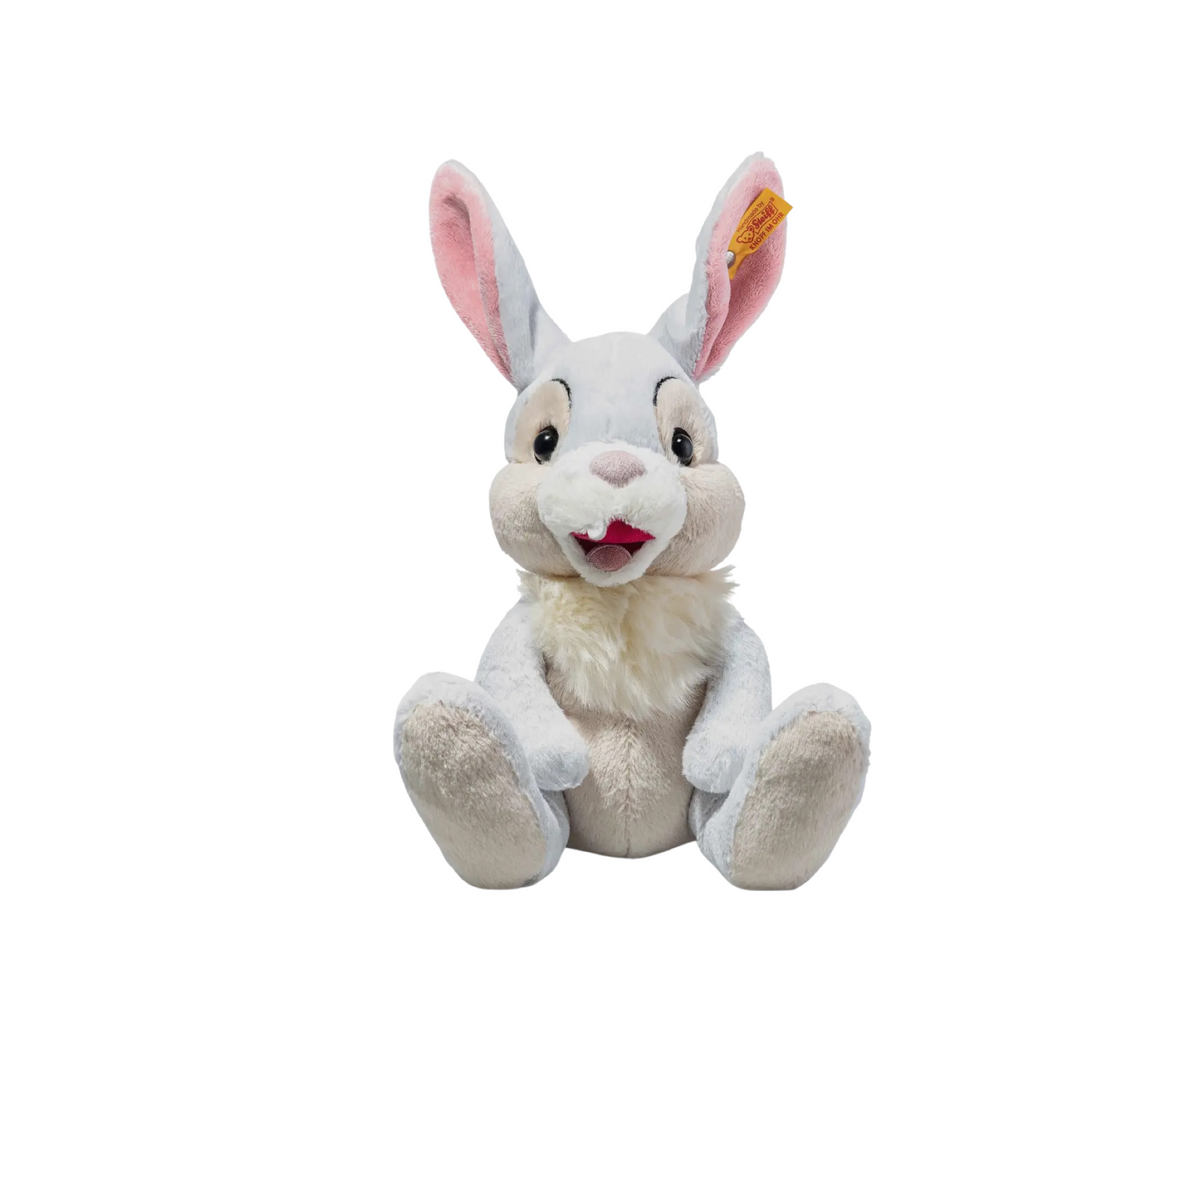 Thumper Plush Rabbit